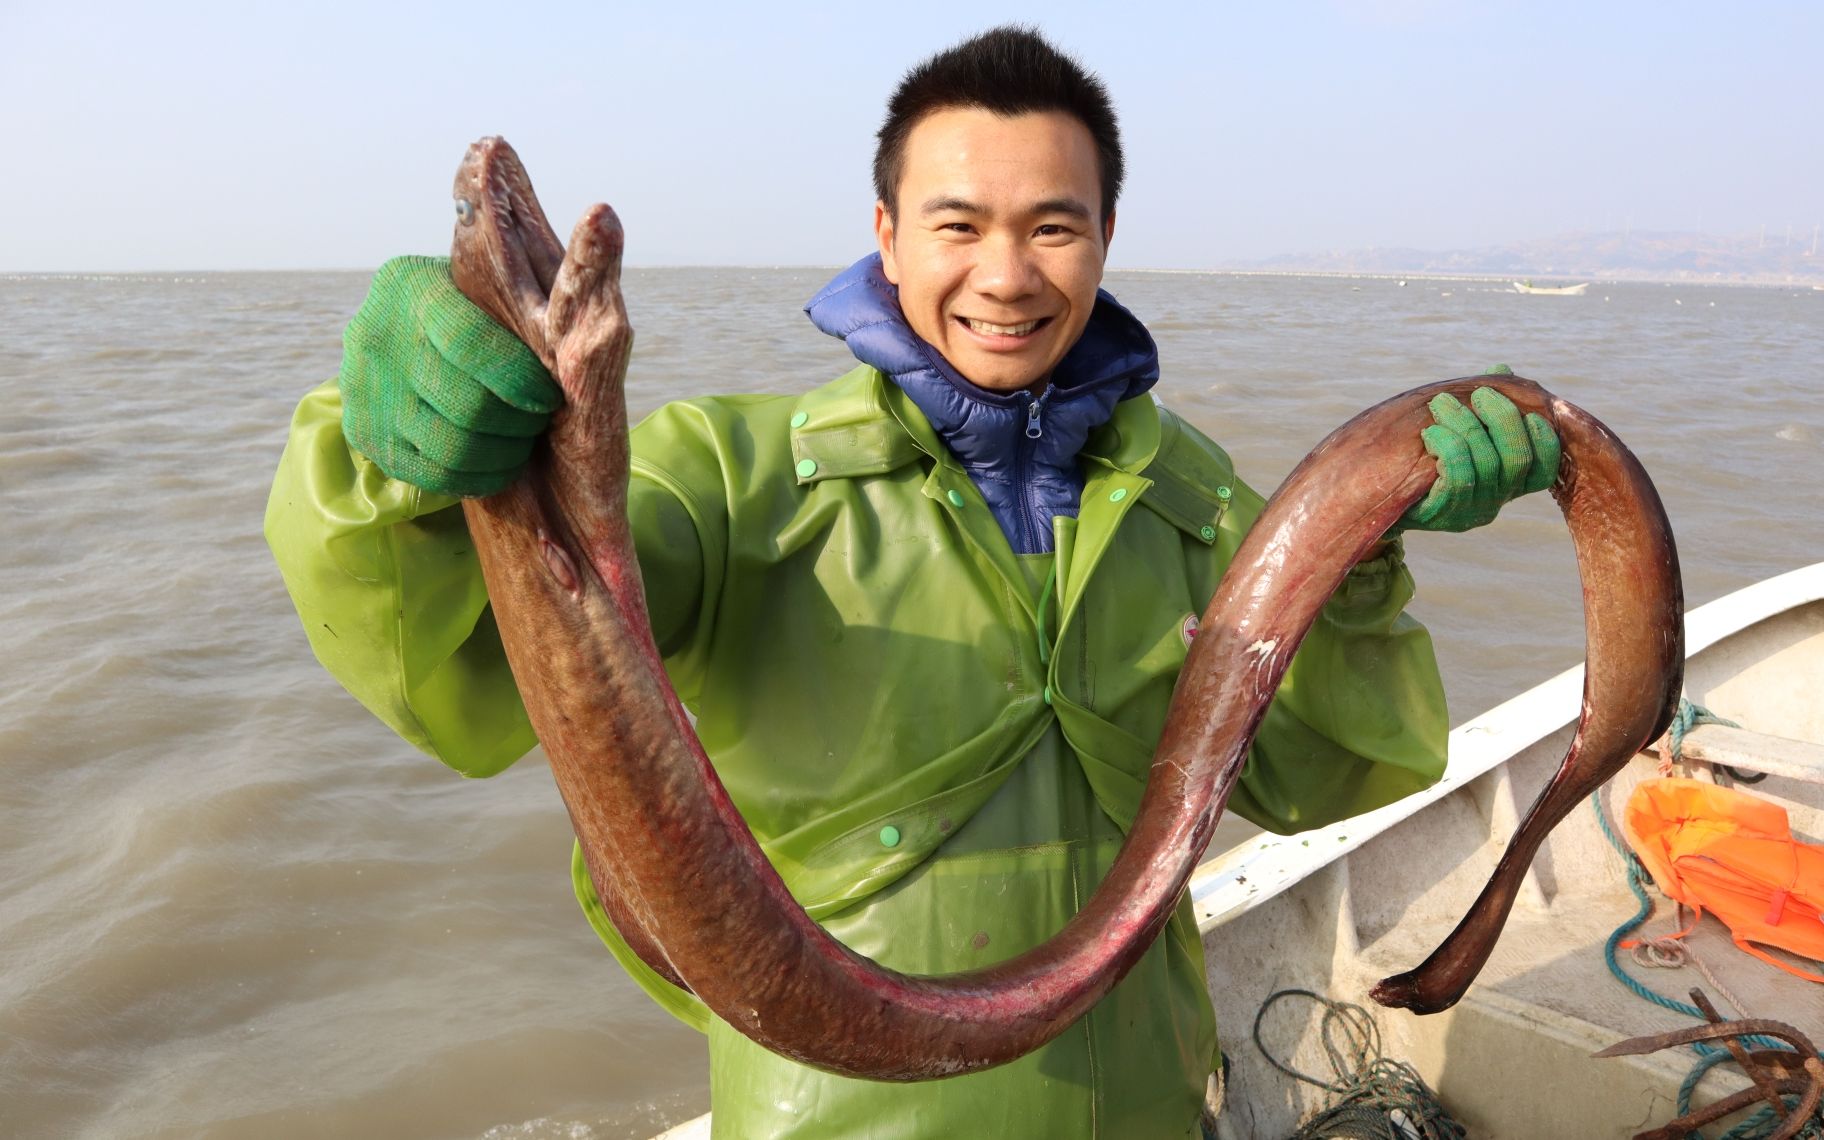 阿烽抓了条红巨鳗快2米长,卖一千多发财了,阔气的给阿鑫分几百